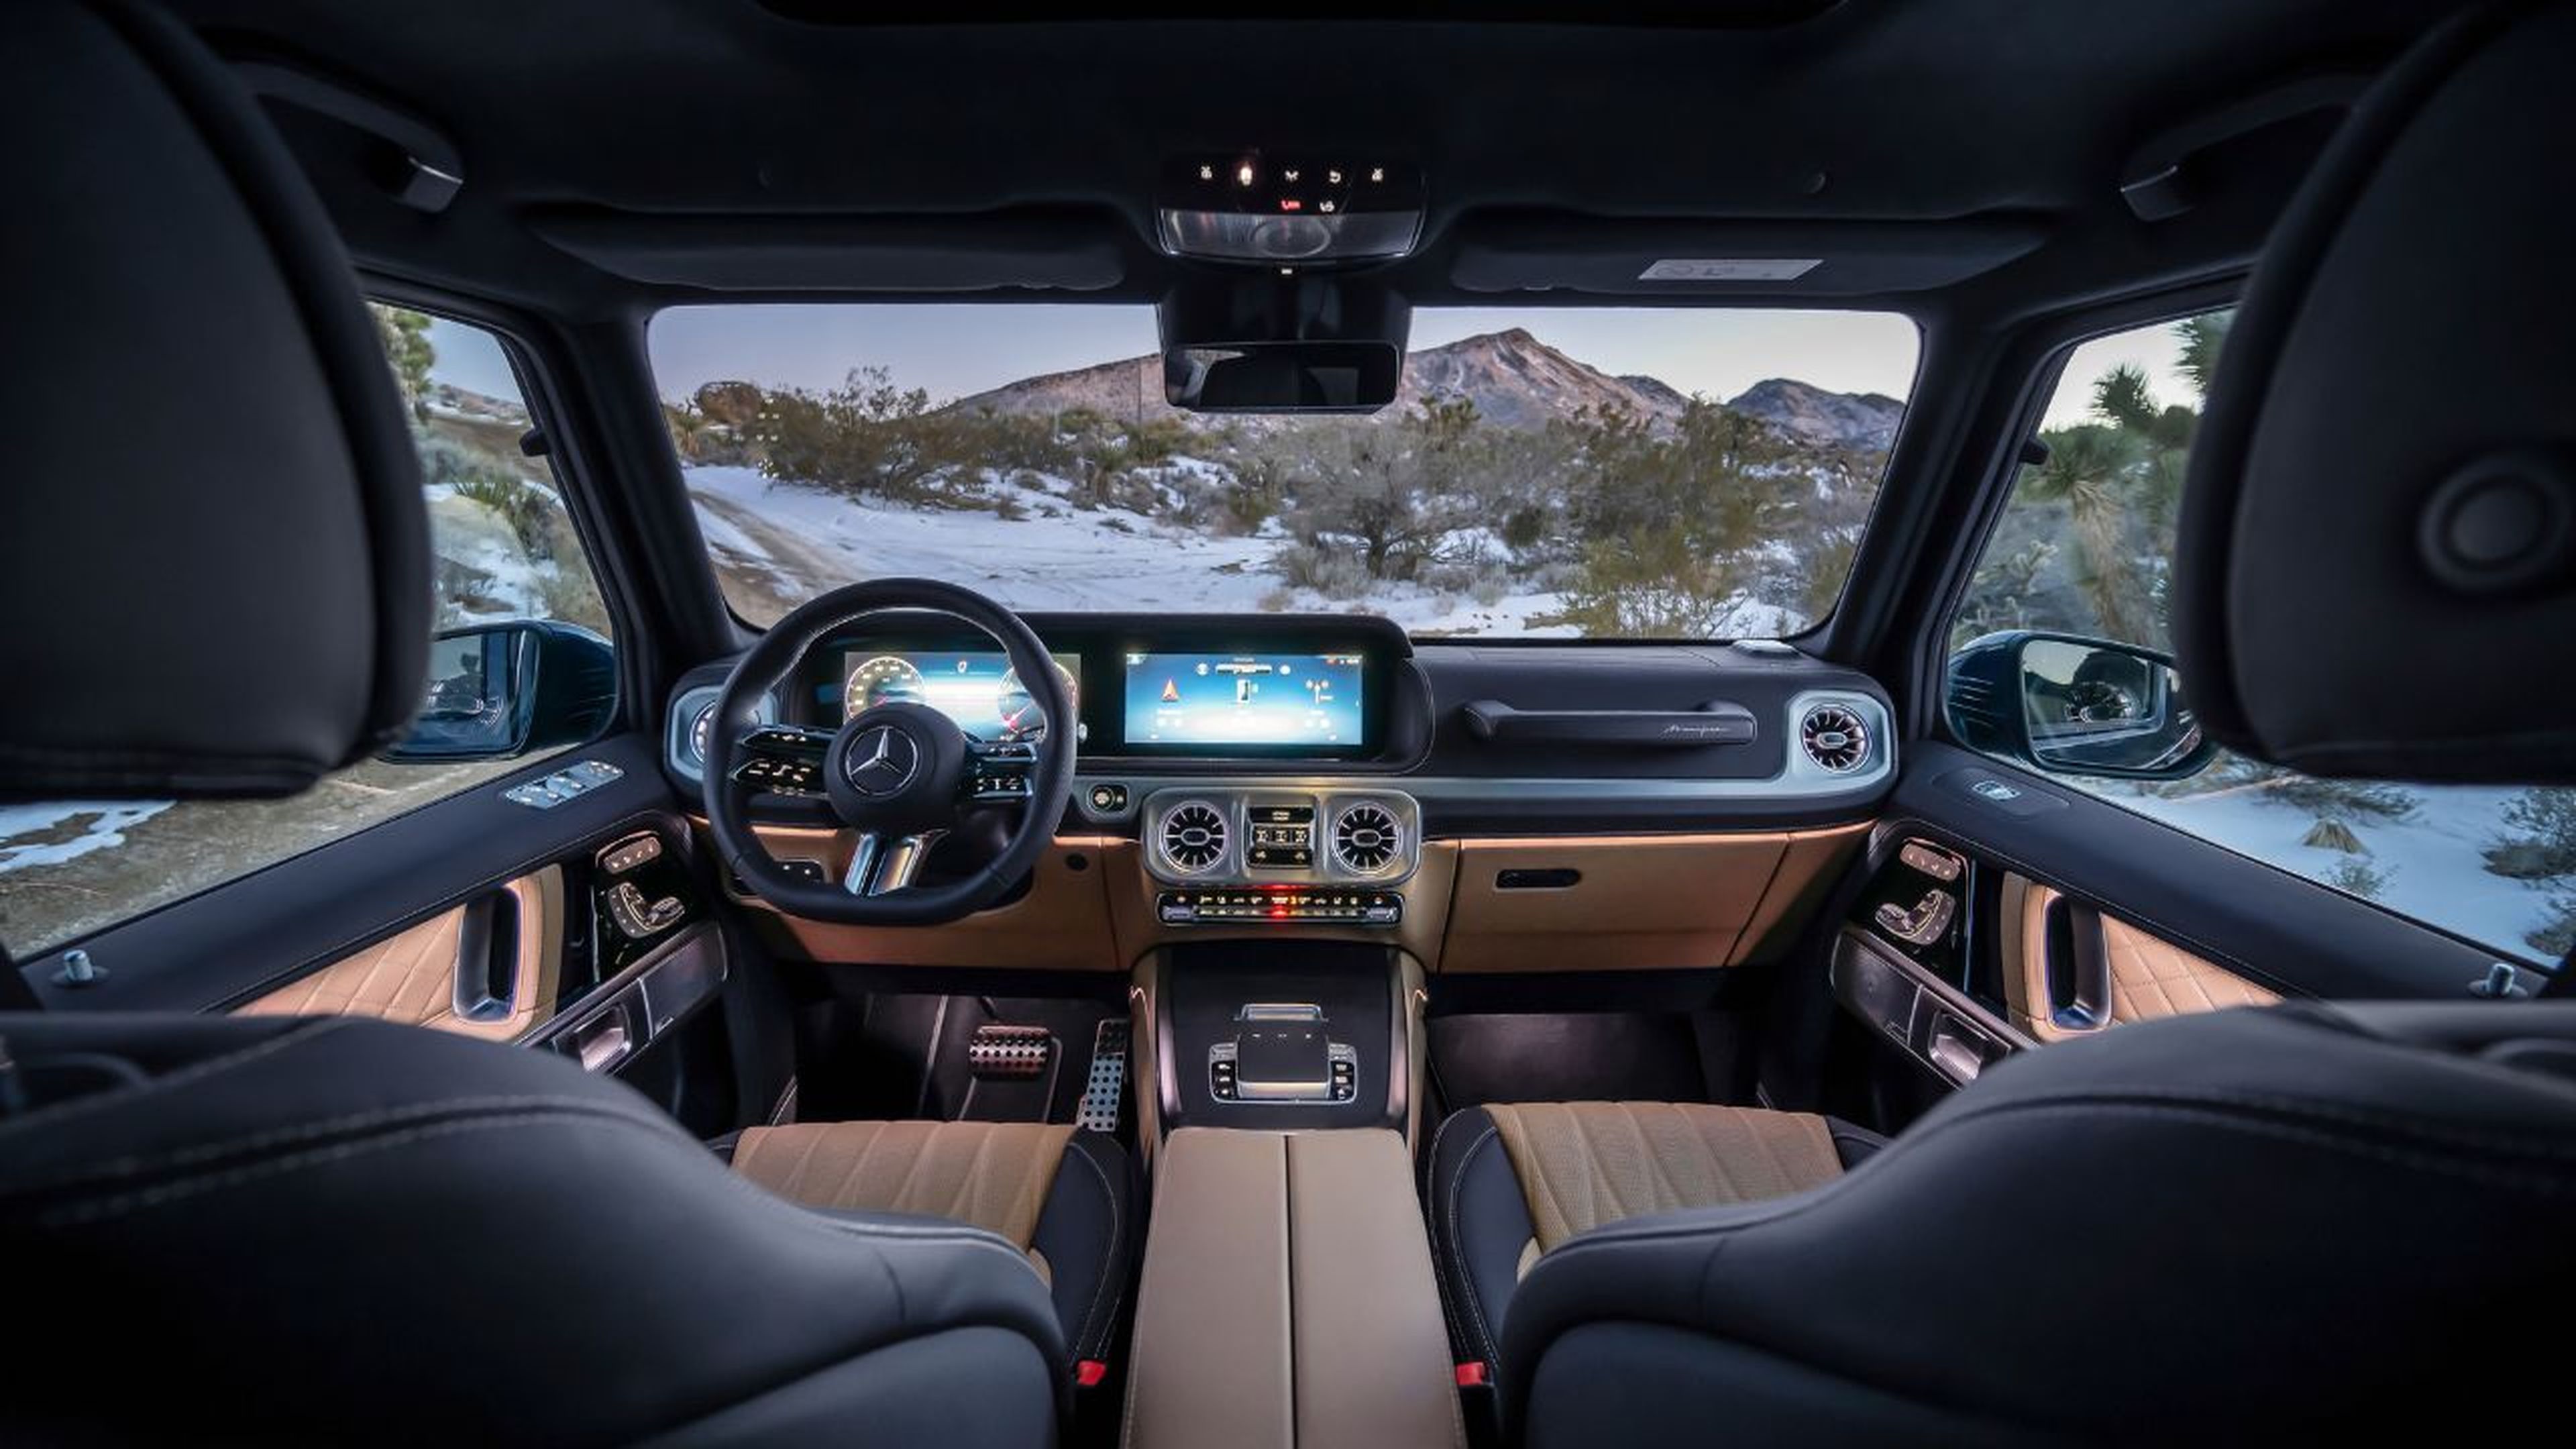 Mercedes Clase G interior 